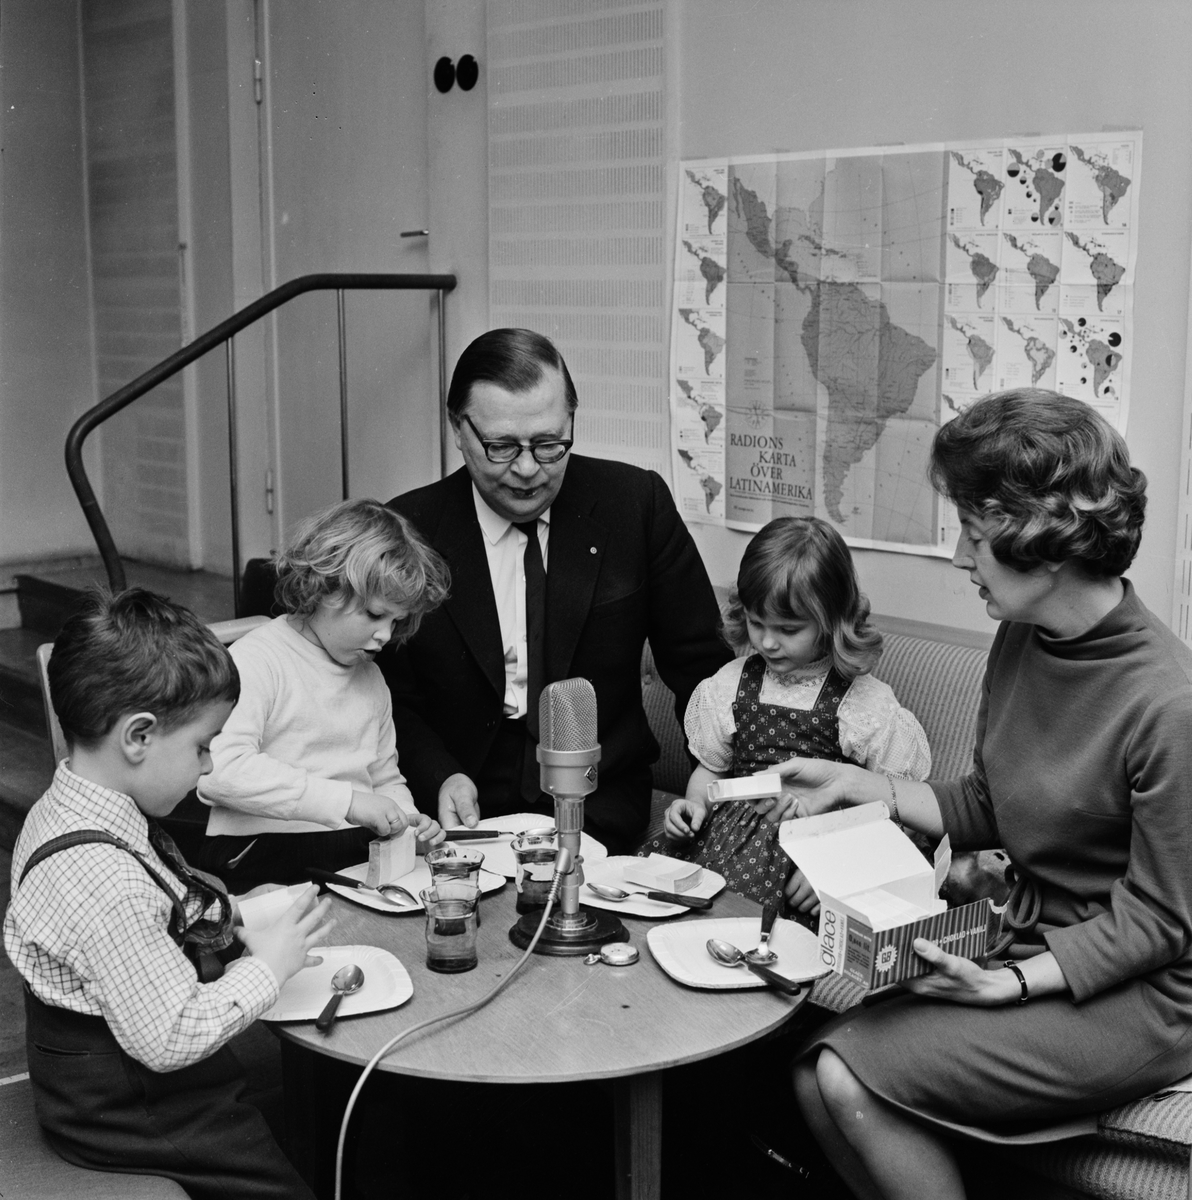 Radiotjänst - Gösta Knutsson med några barn, Uppsala 1962